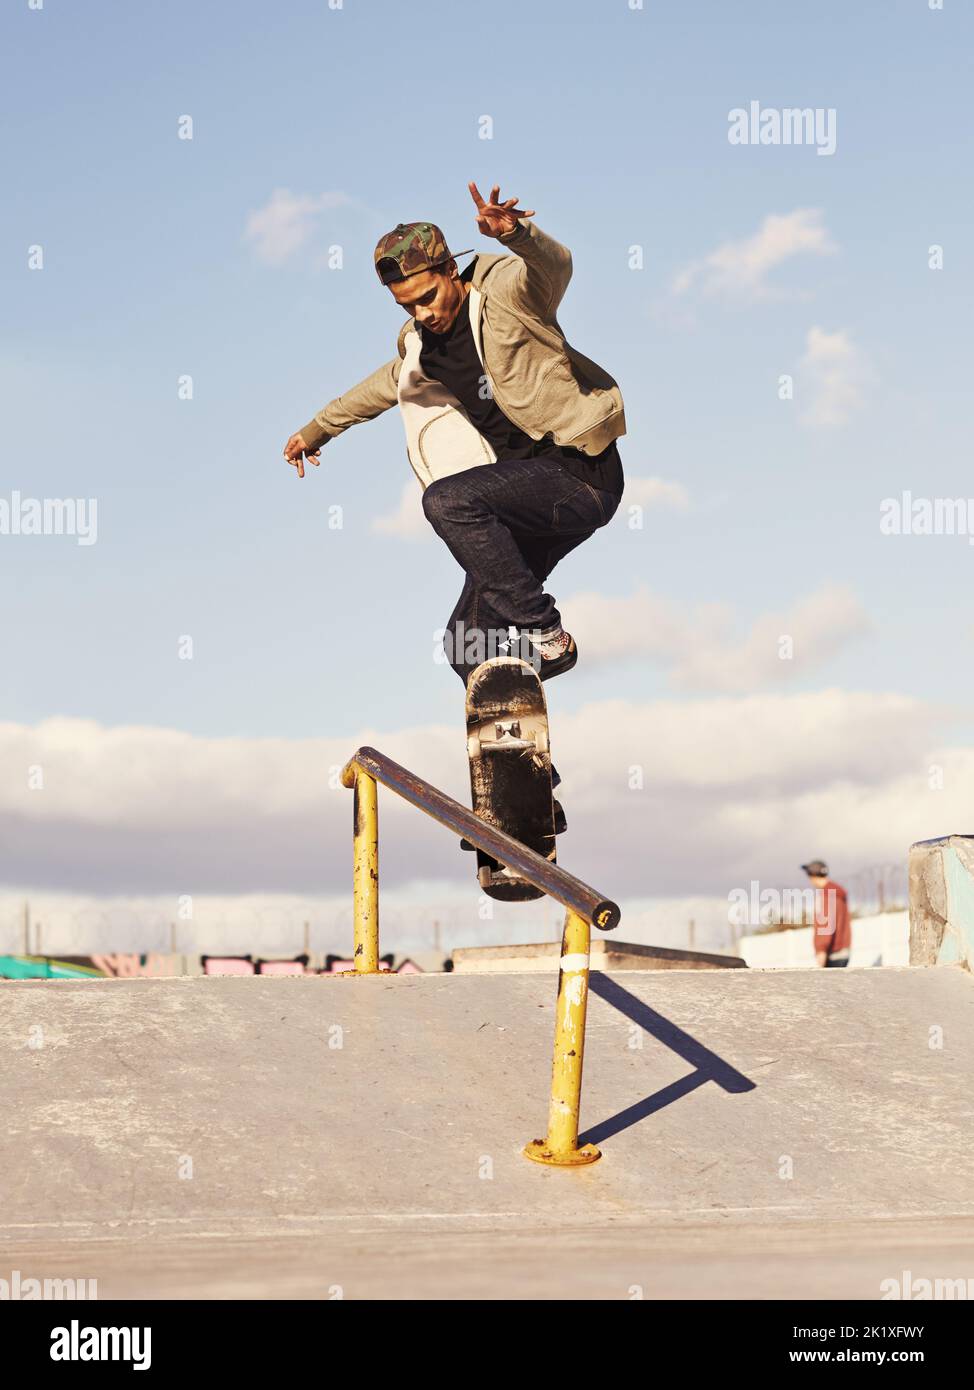 Meulage comme un pro. Un skateboarder effectuant un tour sur un rail Banque D'Images